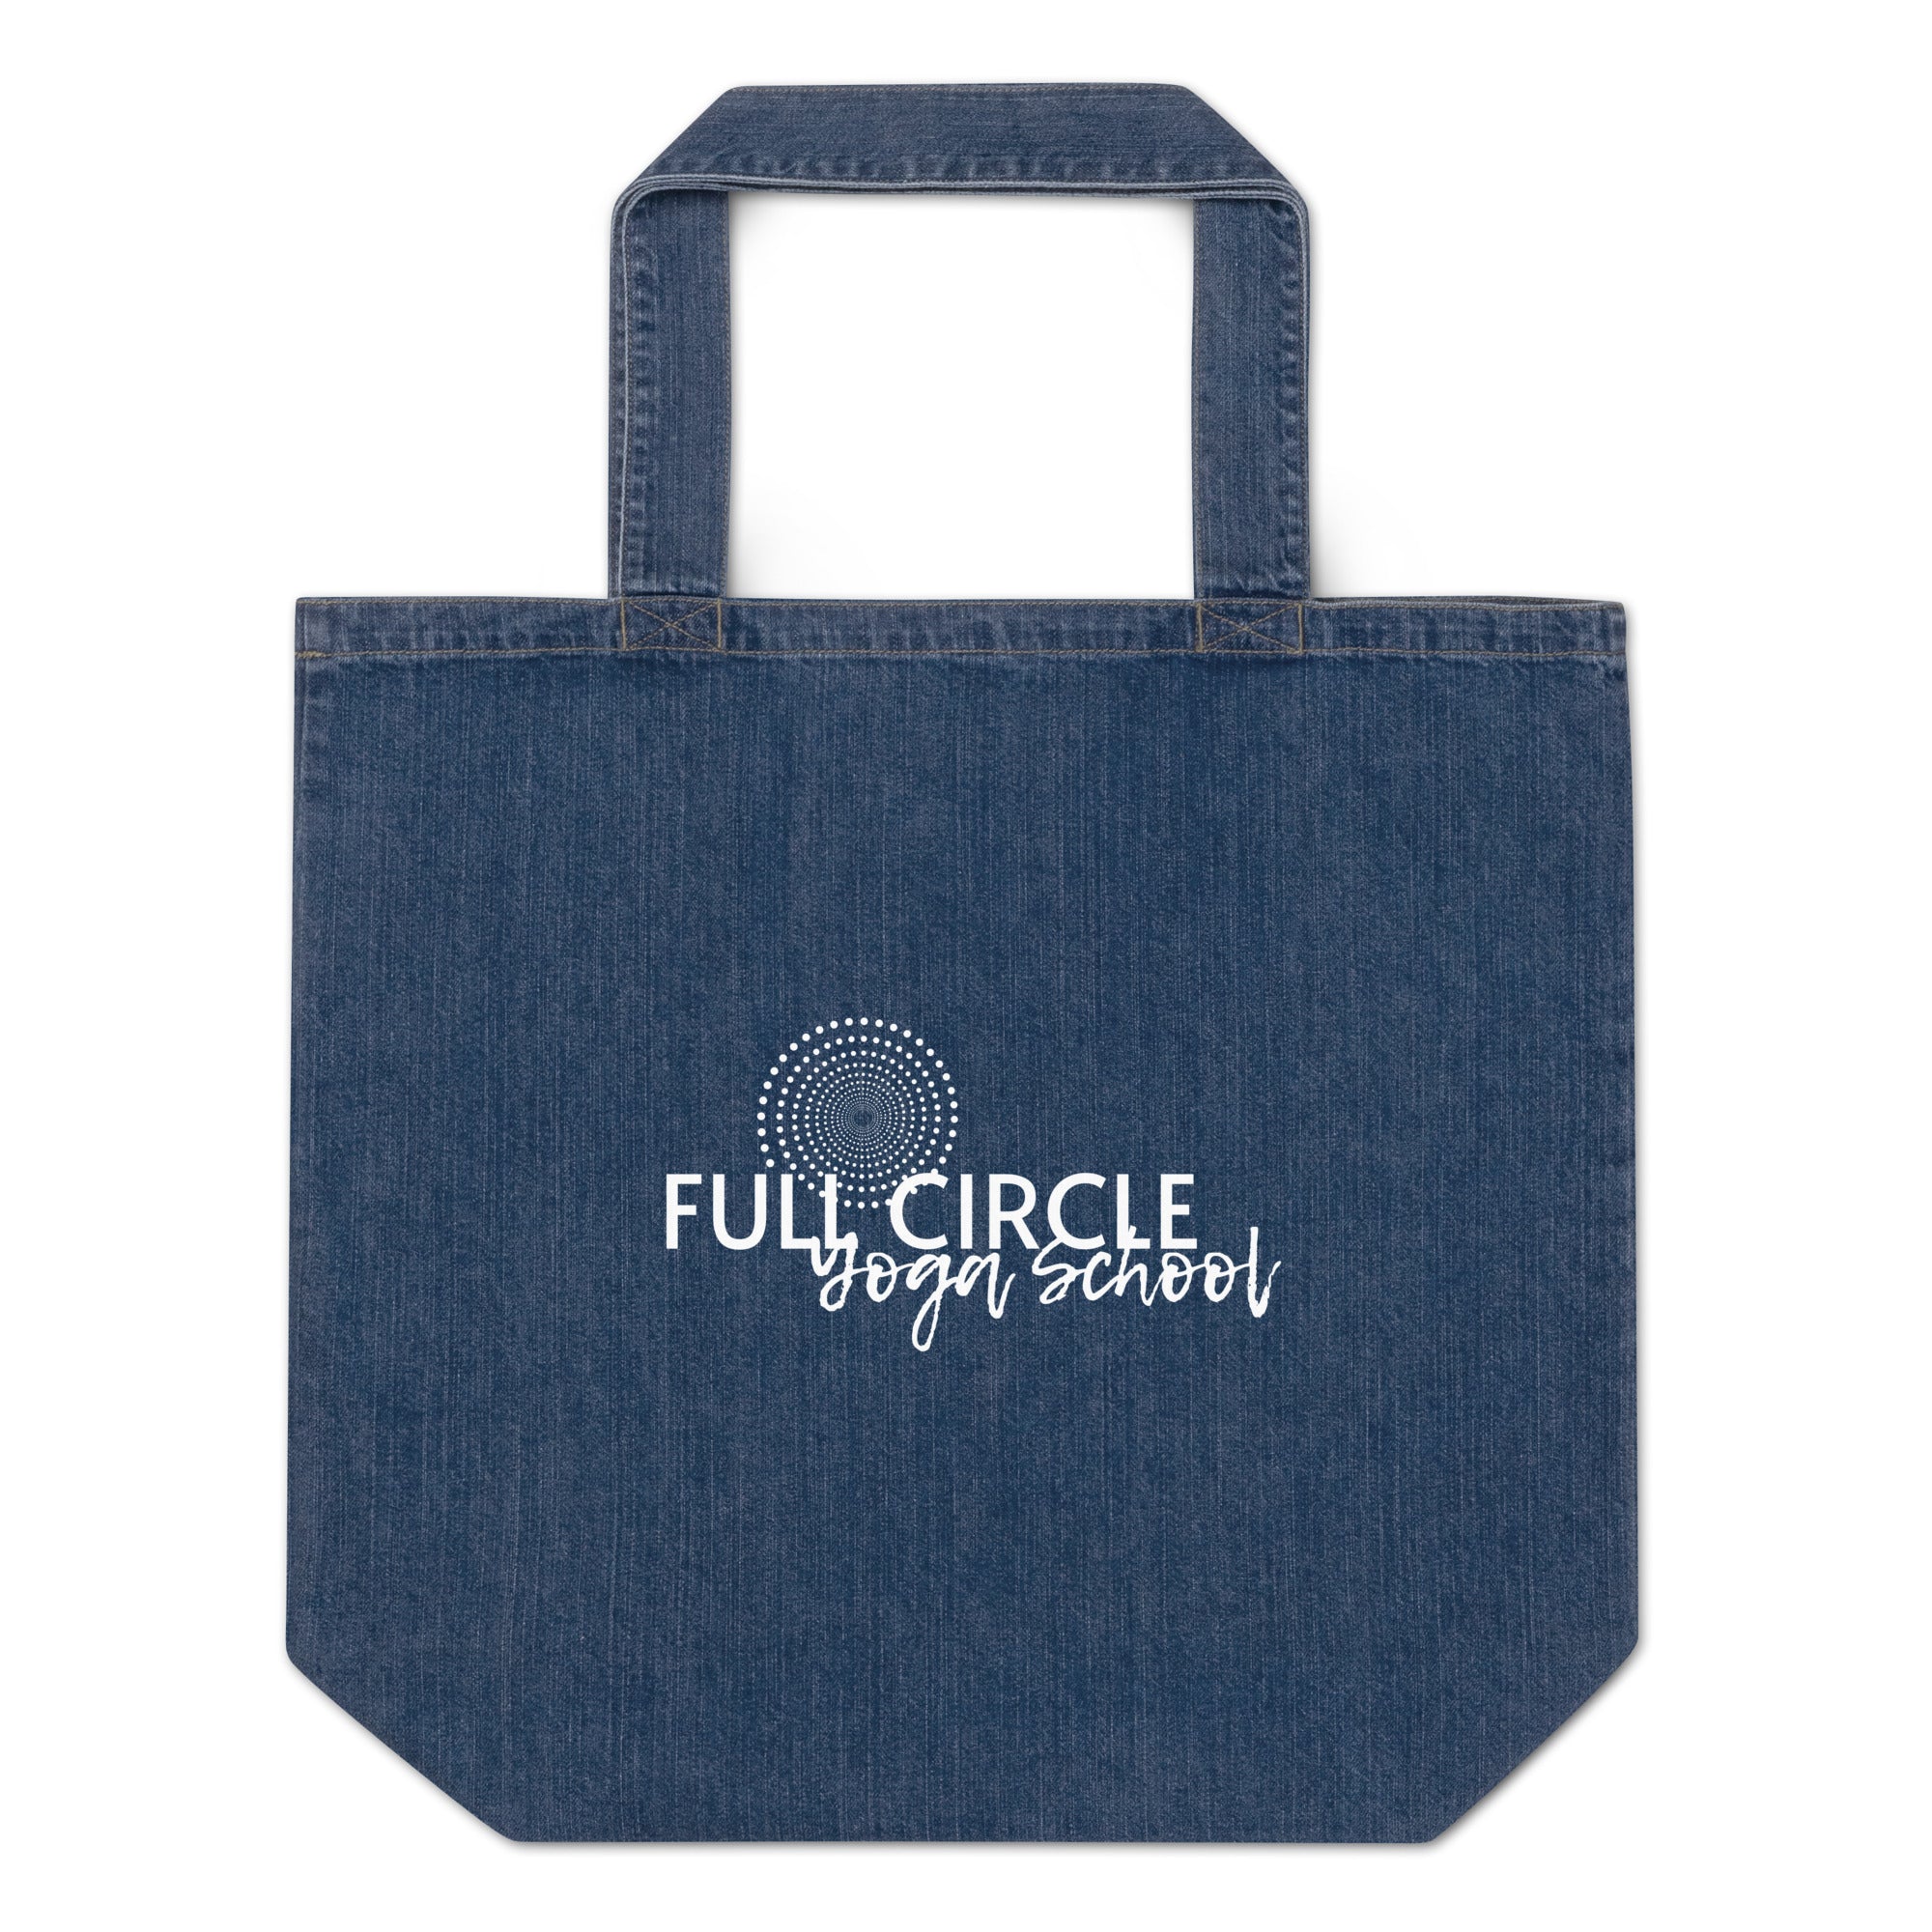 Full Circle Yoga School Organic denim tote bag